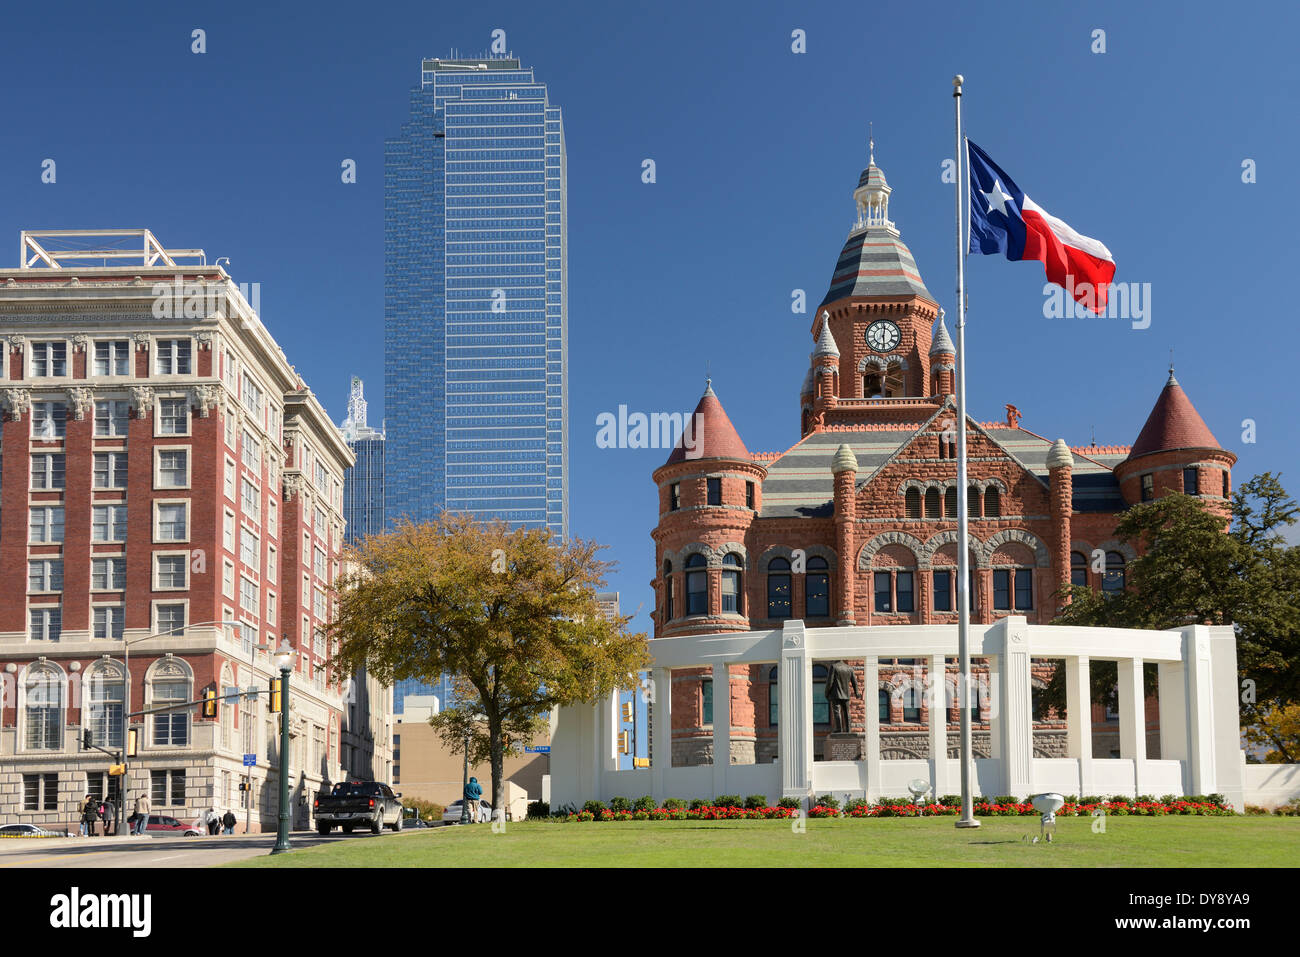 América del Norte, Texas, EE.UU., país, Estados Unidos, Dallas, Dealey Plaza, bandera, edificios Foto de stock